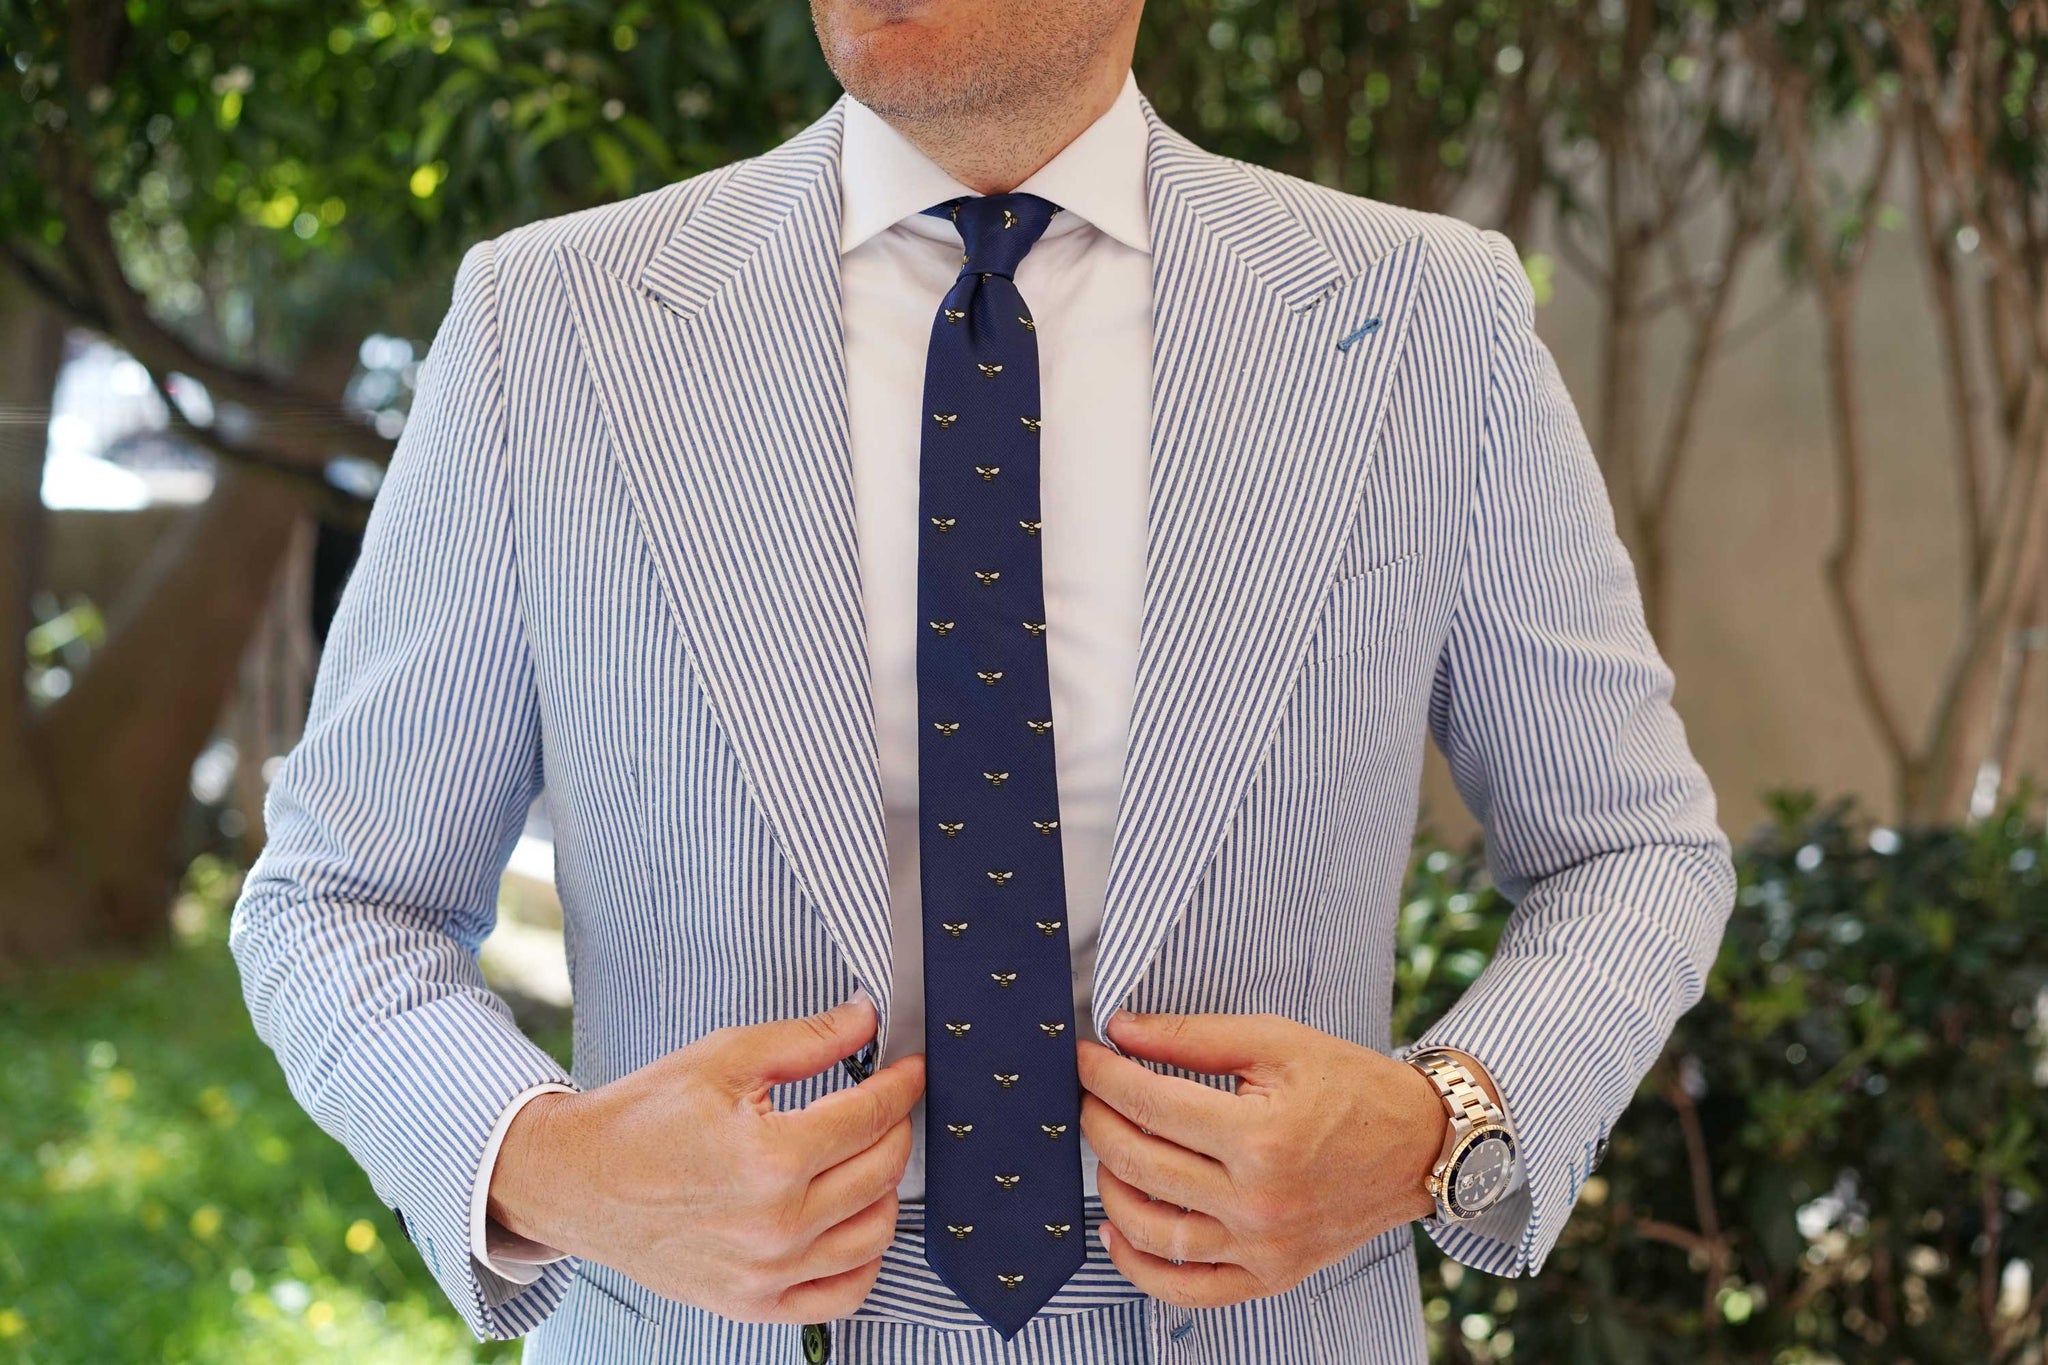 Bumble Bee Skinny Tie | Slim Ties Thin Neckties Necktie | OTAA